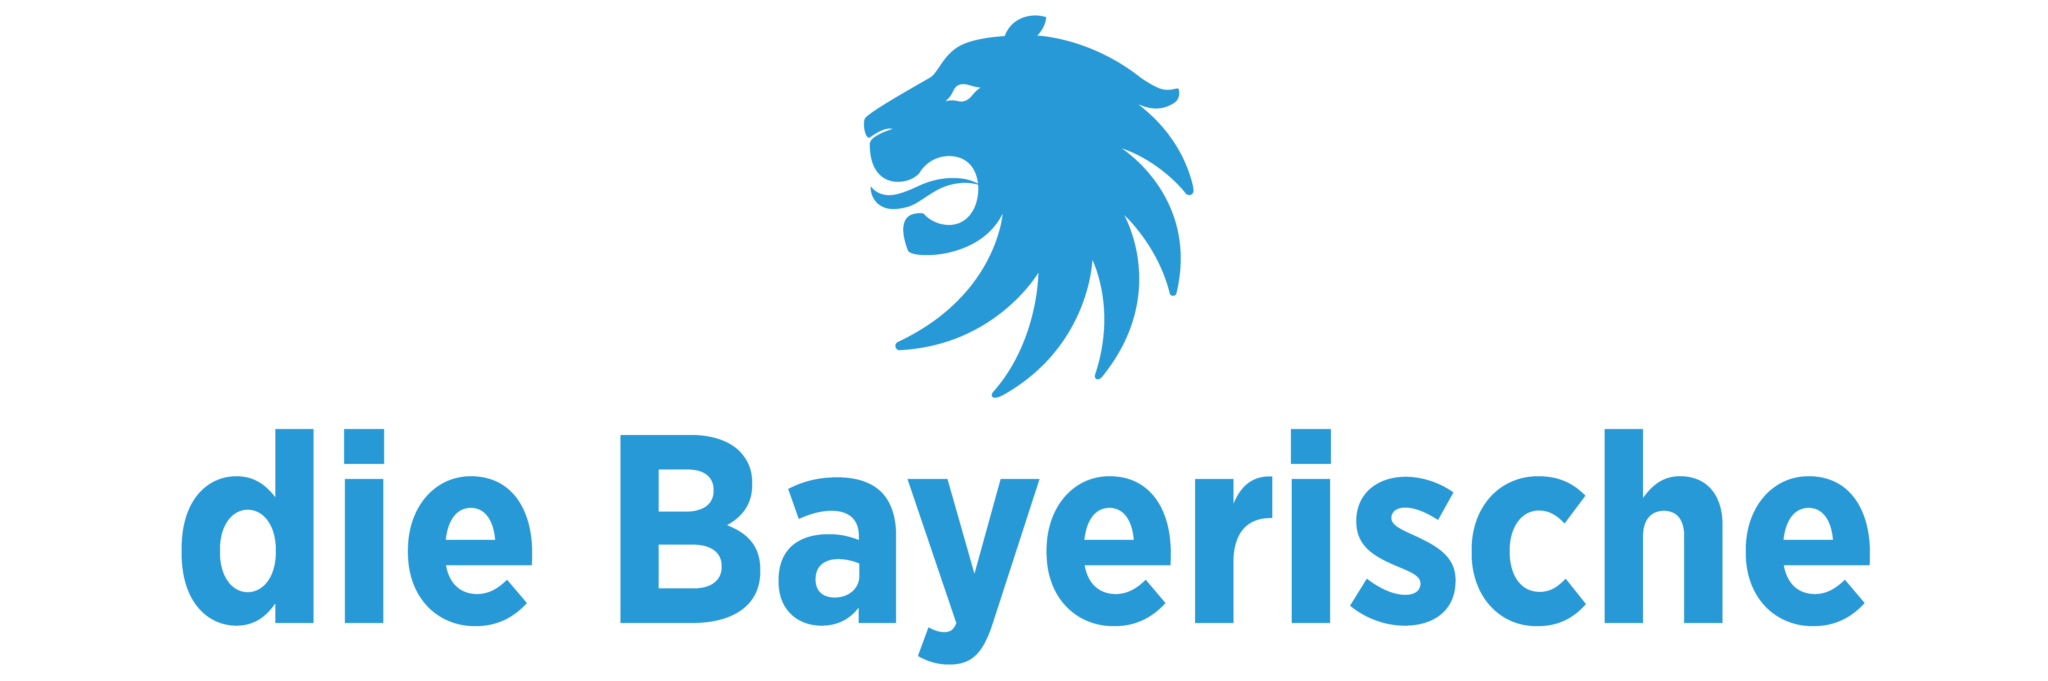 Logo die Bayerische